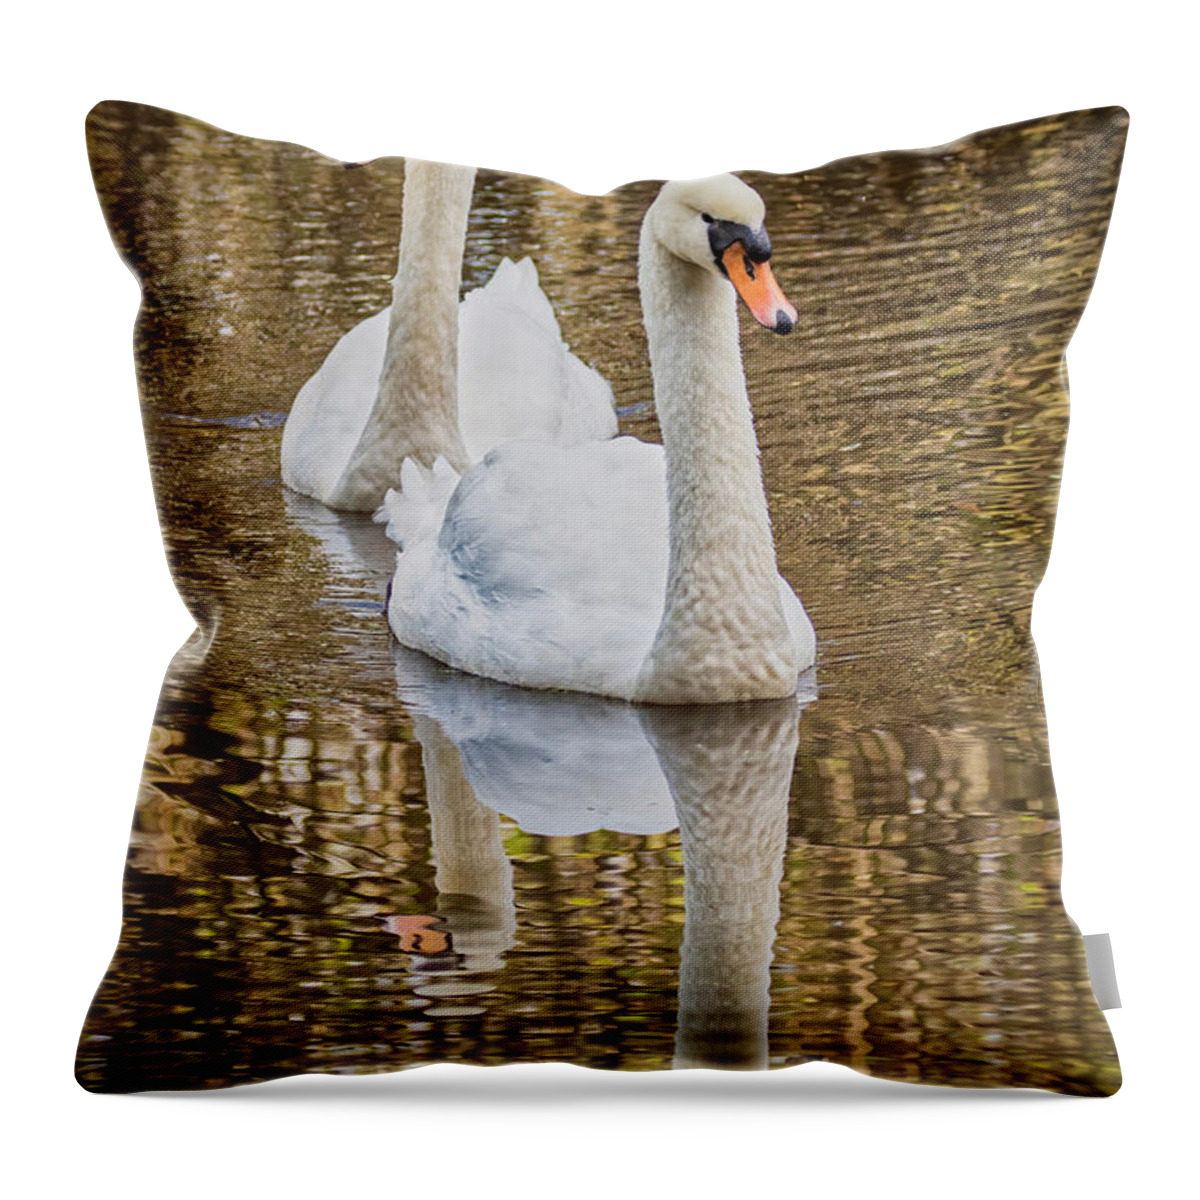 Mute Swan Throw Pillow featuring the photograph Golden Pond by Jurgen Lorenzen